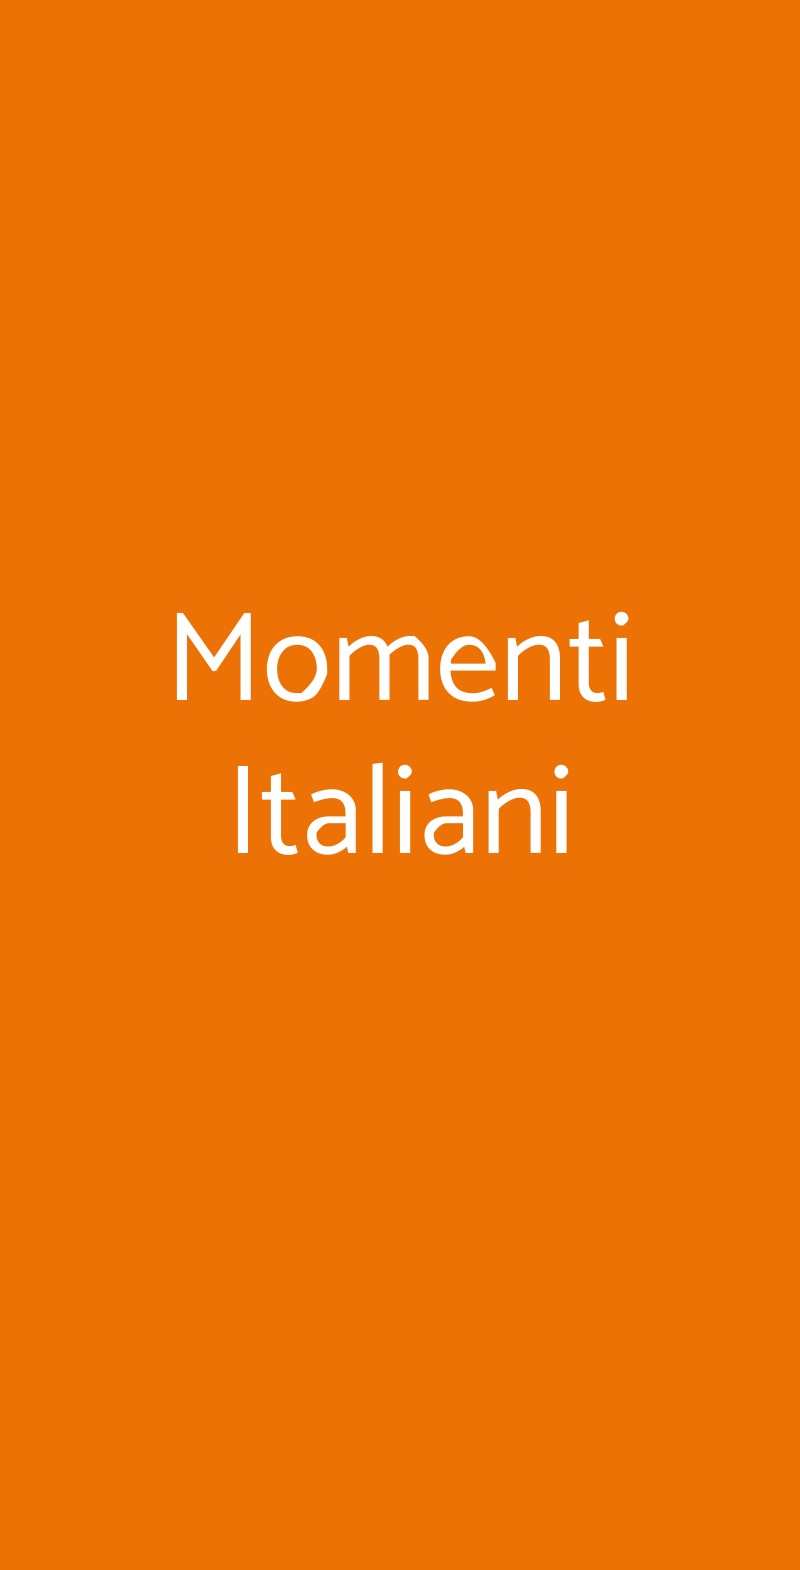 Momenti Italiani Torino menù 1 pagina